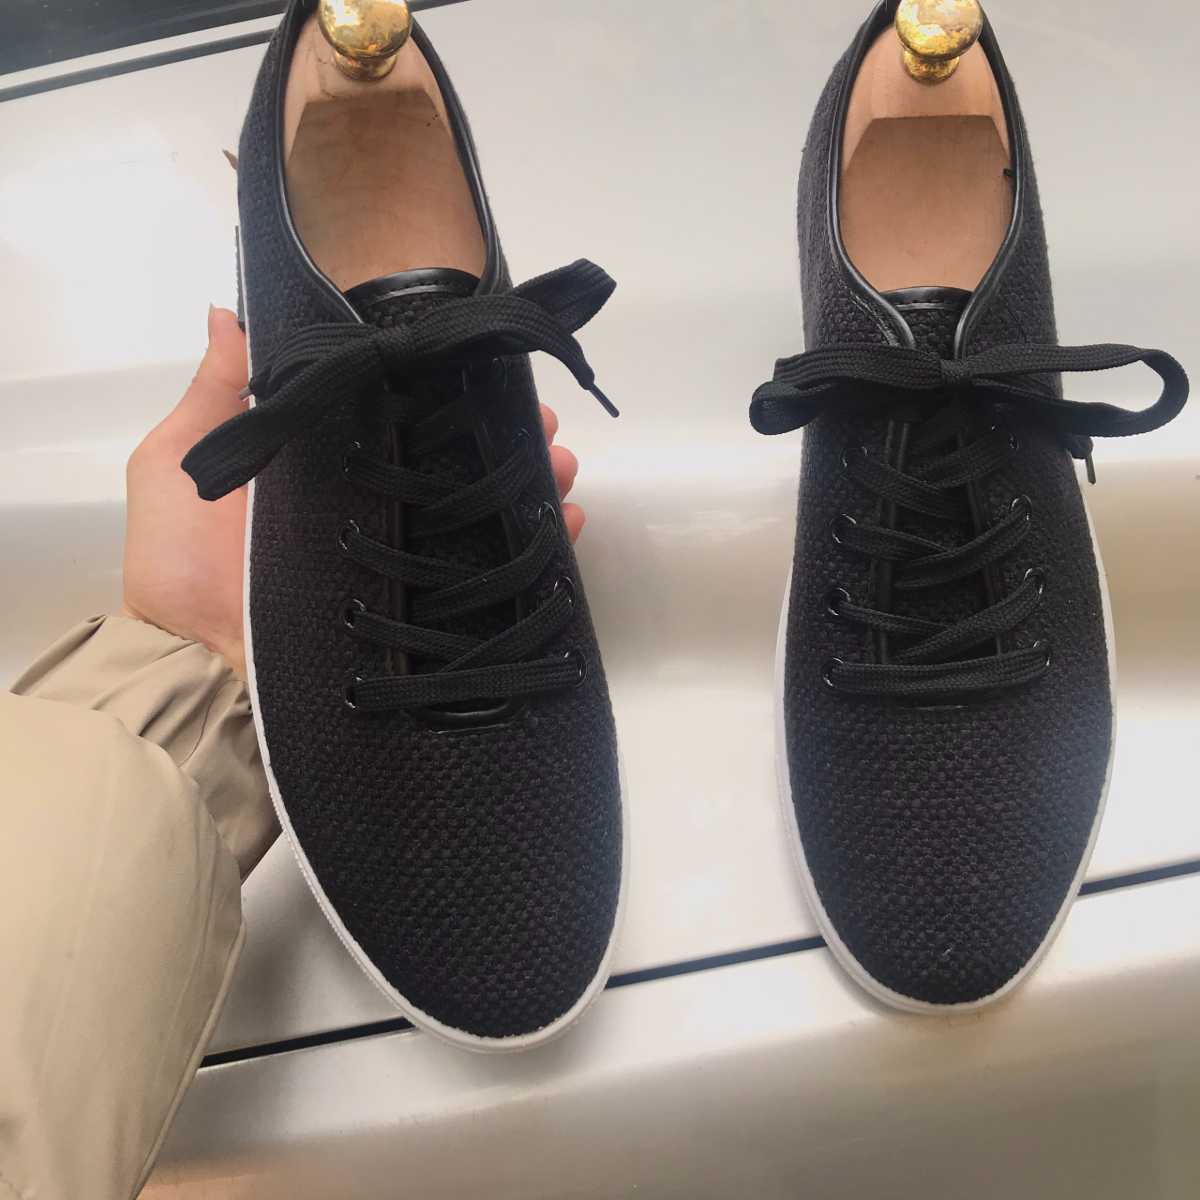 Giày sneaker nam G503 , giày vải kiểu dáng sneaker buộc dây chất liệu sợi dệt lưới cao cấp phong cách độc đáo, cá tính, năng động